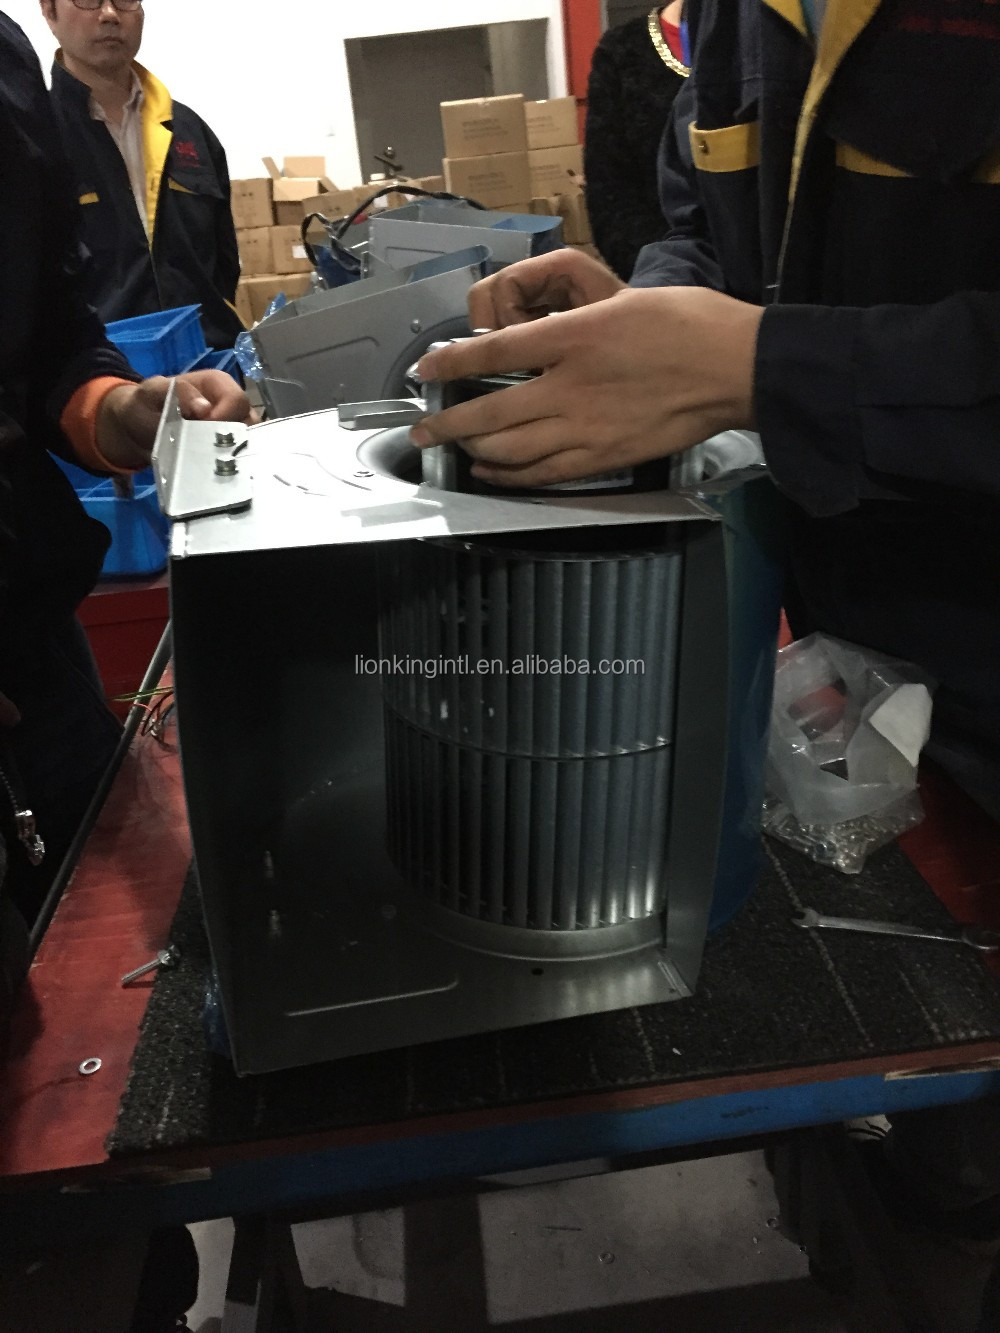 Visokotlačni centrifugalni ventilator po tovarniški ceni